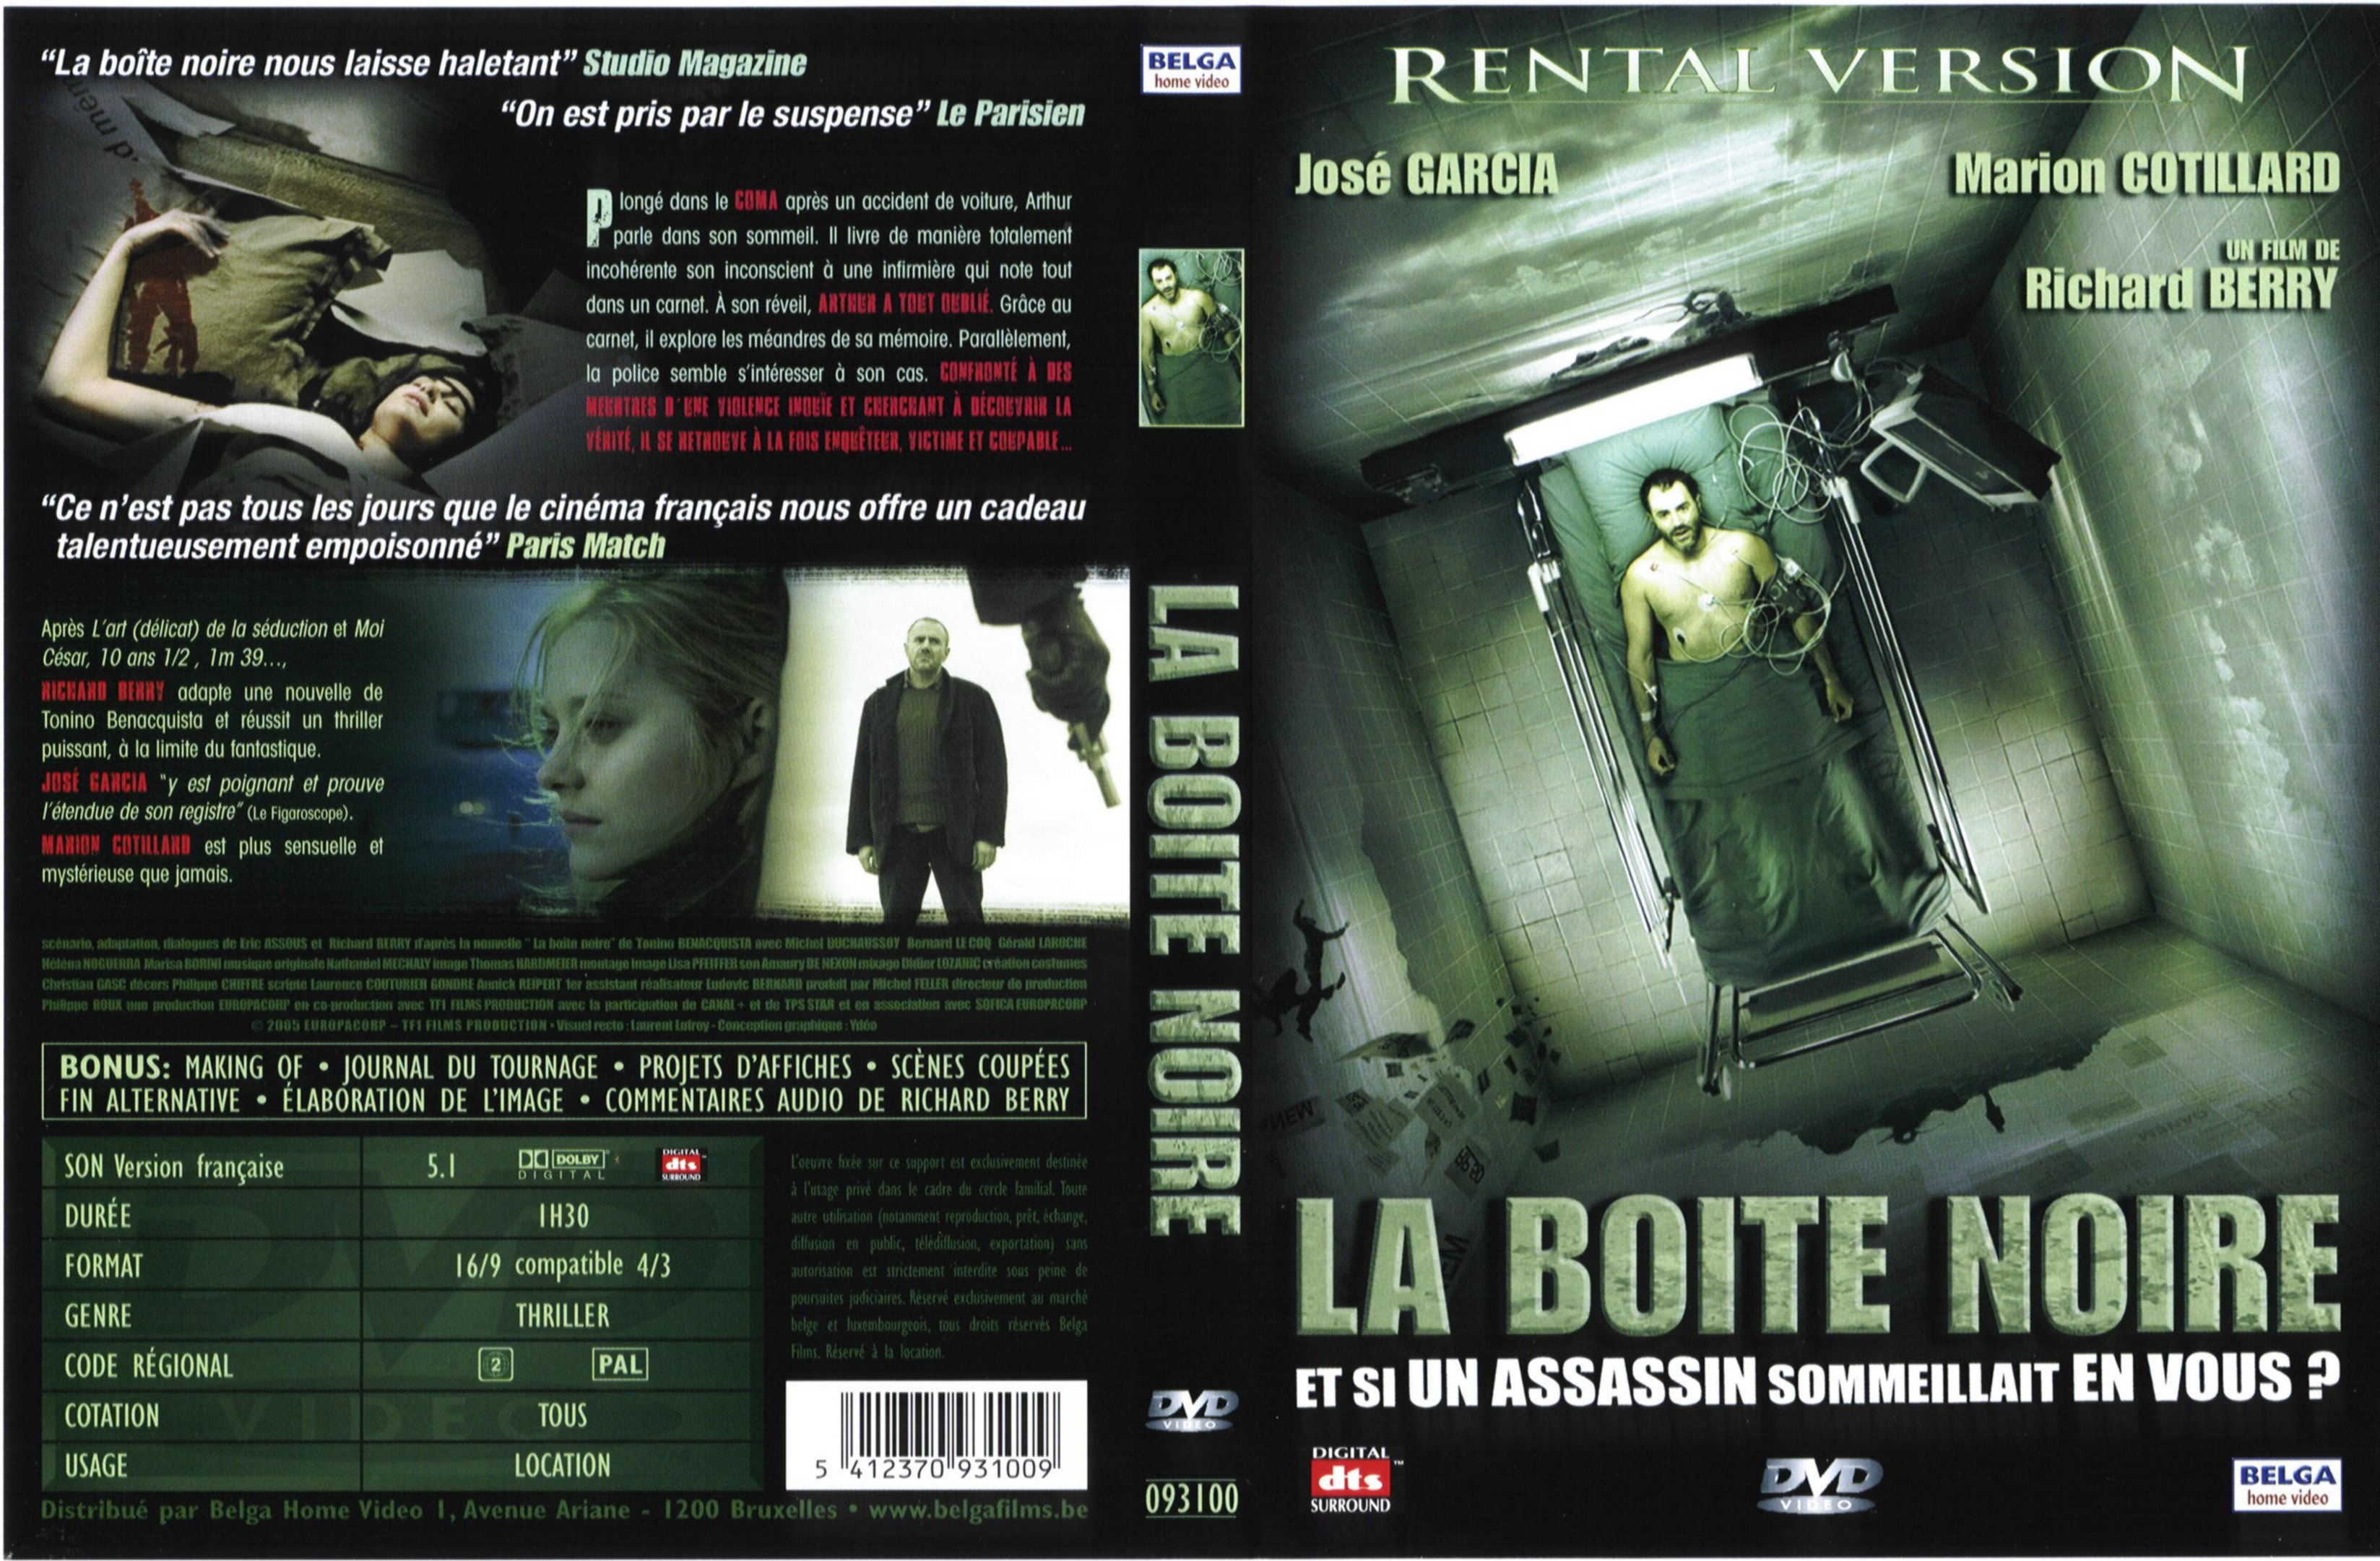 Jaquette DVD La boite noire v2